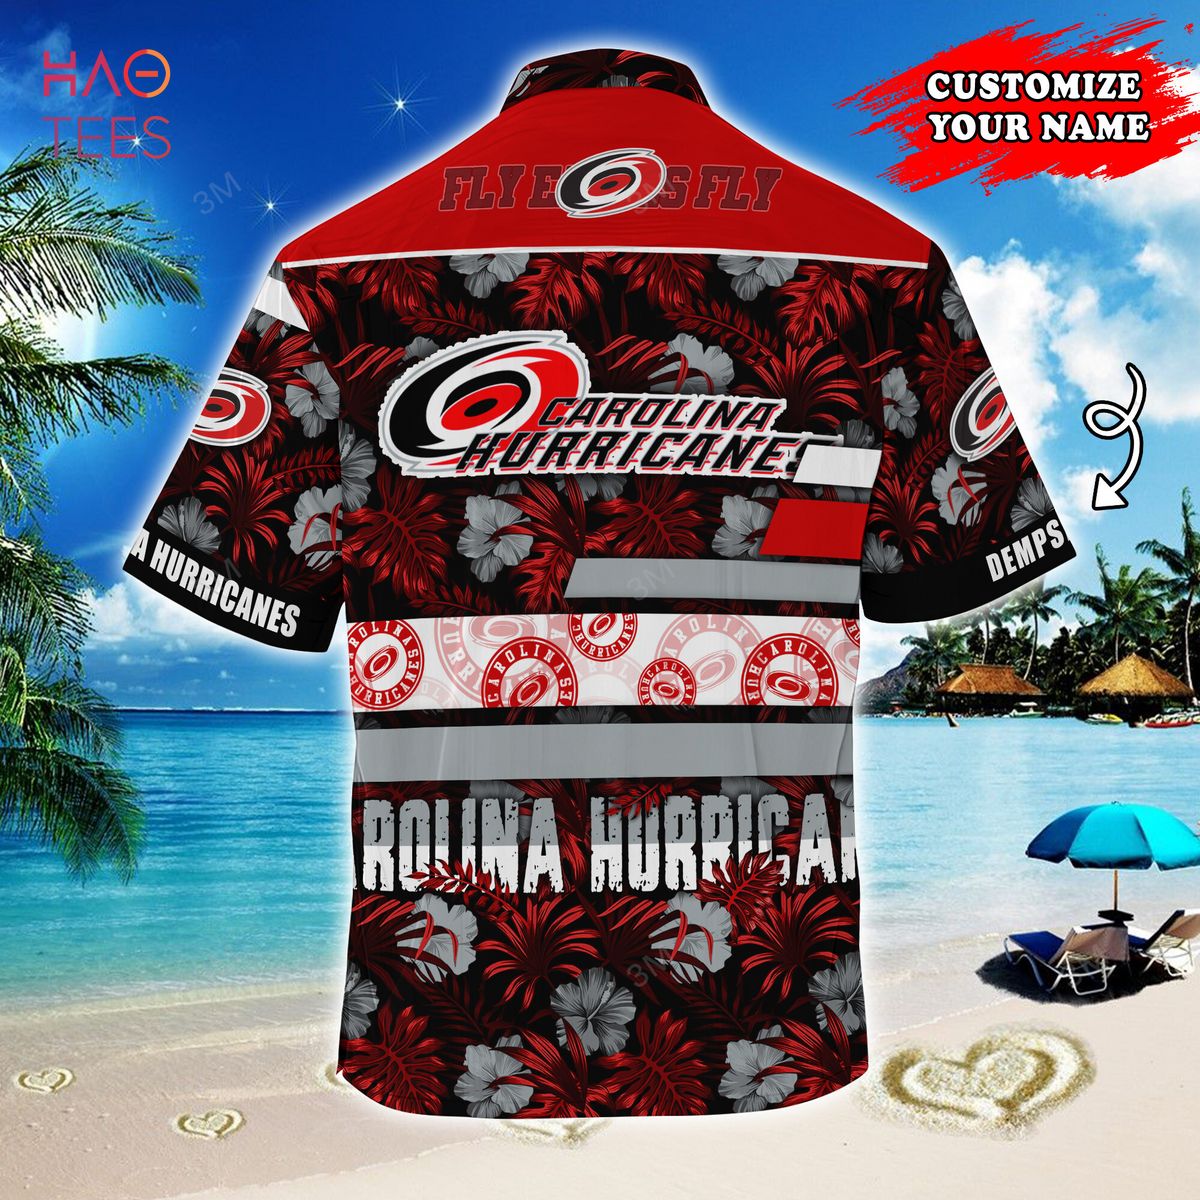 Carolina Hurricanes NHL Hawaiian Shirt Sunlight Aloha Shirt - Trendy Aloha